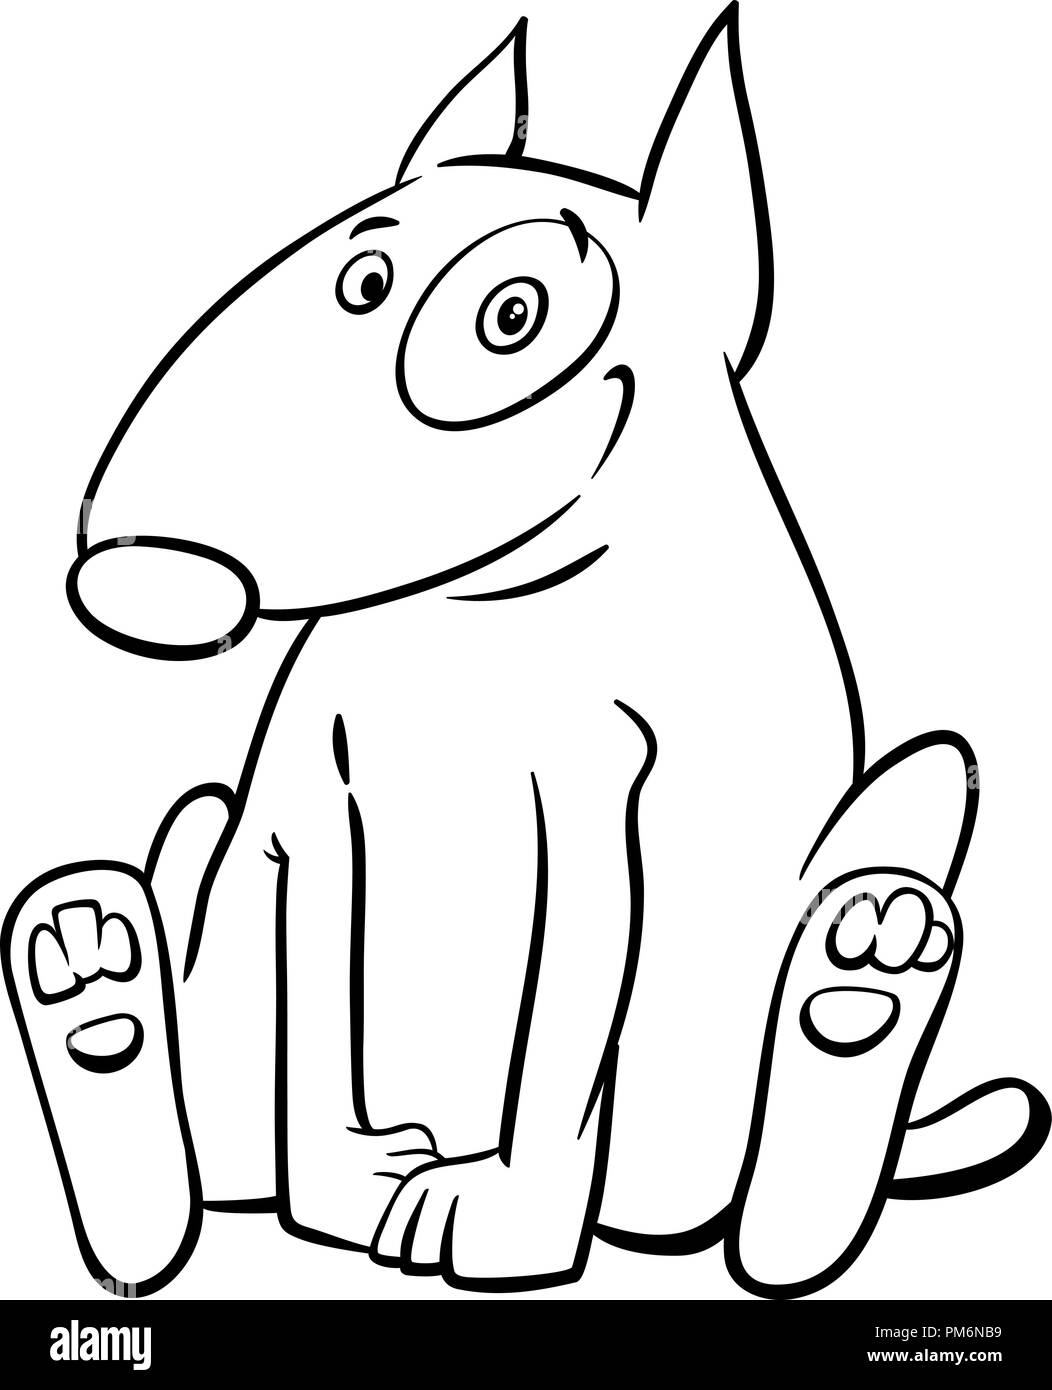 Schwarze und Weiße Cartoon Illustration von lustigen Bull Terrier Hund Tier Charakter Malbuch Stock Vektor